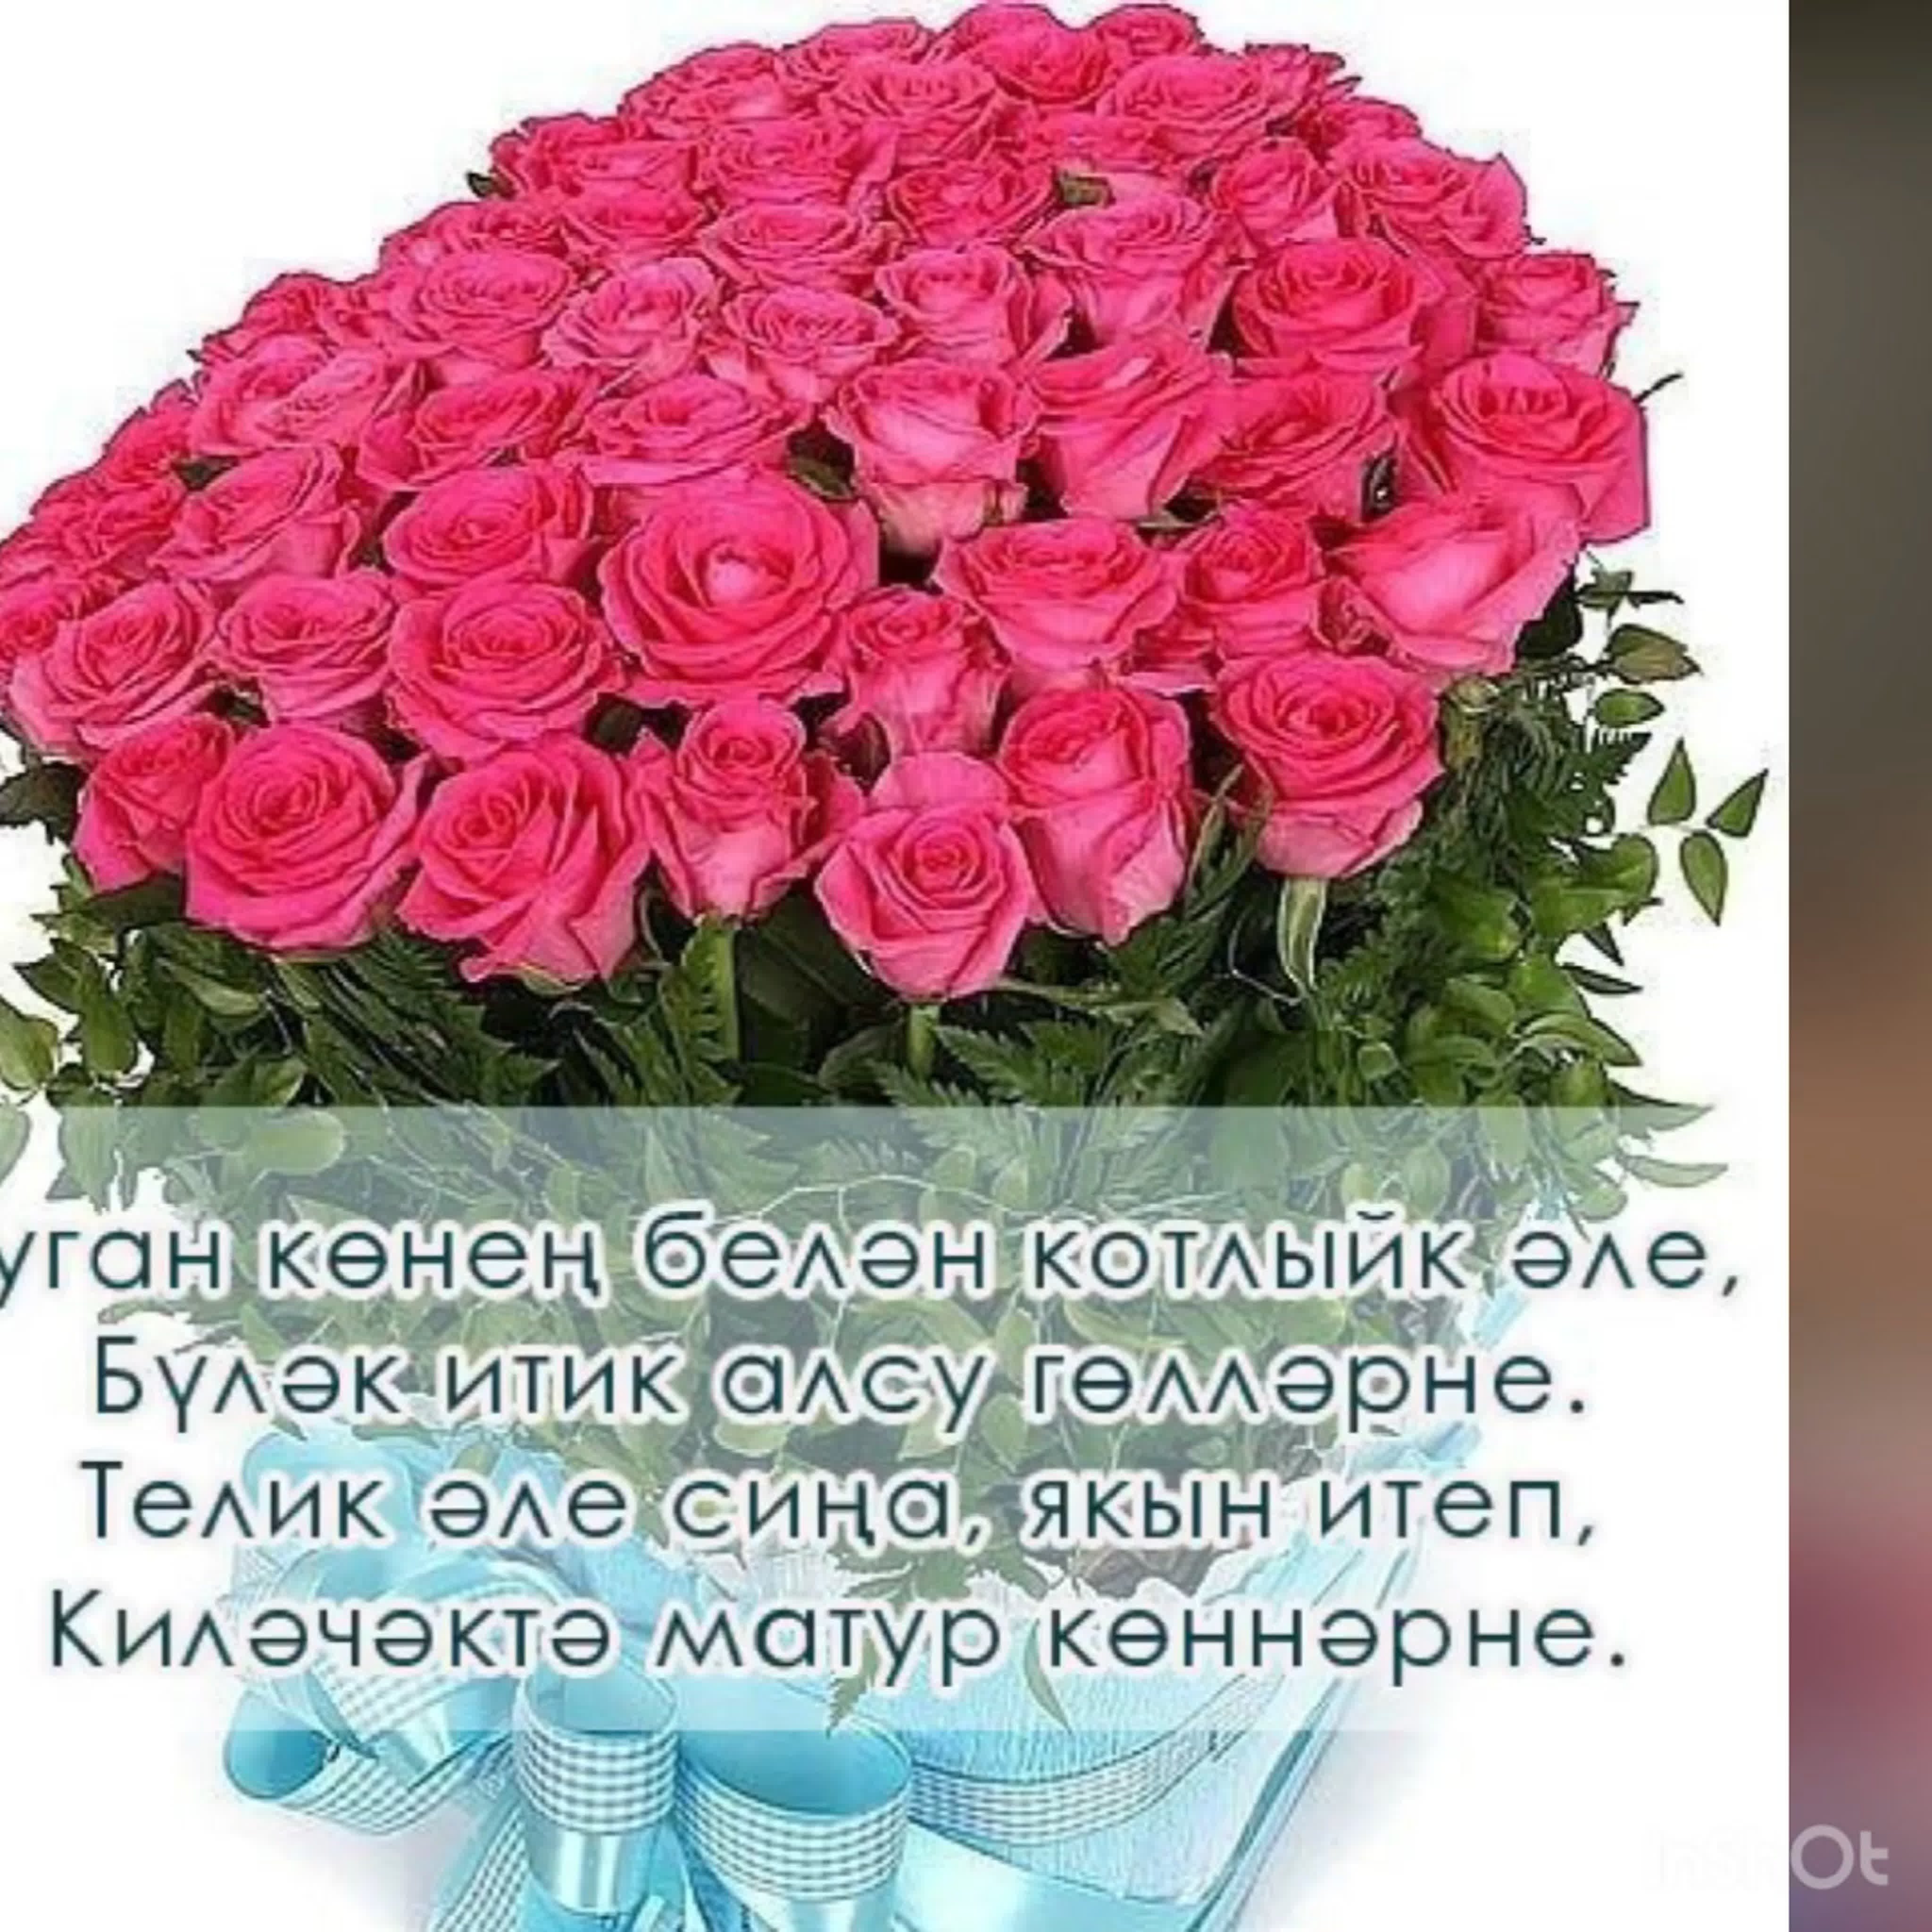 Татарские поздравления с днем рождения сыну. Поздравления с днём рождения на татарском языке. Поздравления с днём рождения женщине на татарском языке. Поздравления с днём рождения женщине на татарском. Поздравления с днём рождения женщине на татарском я.